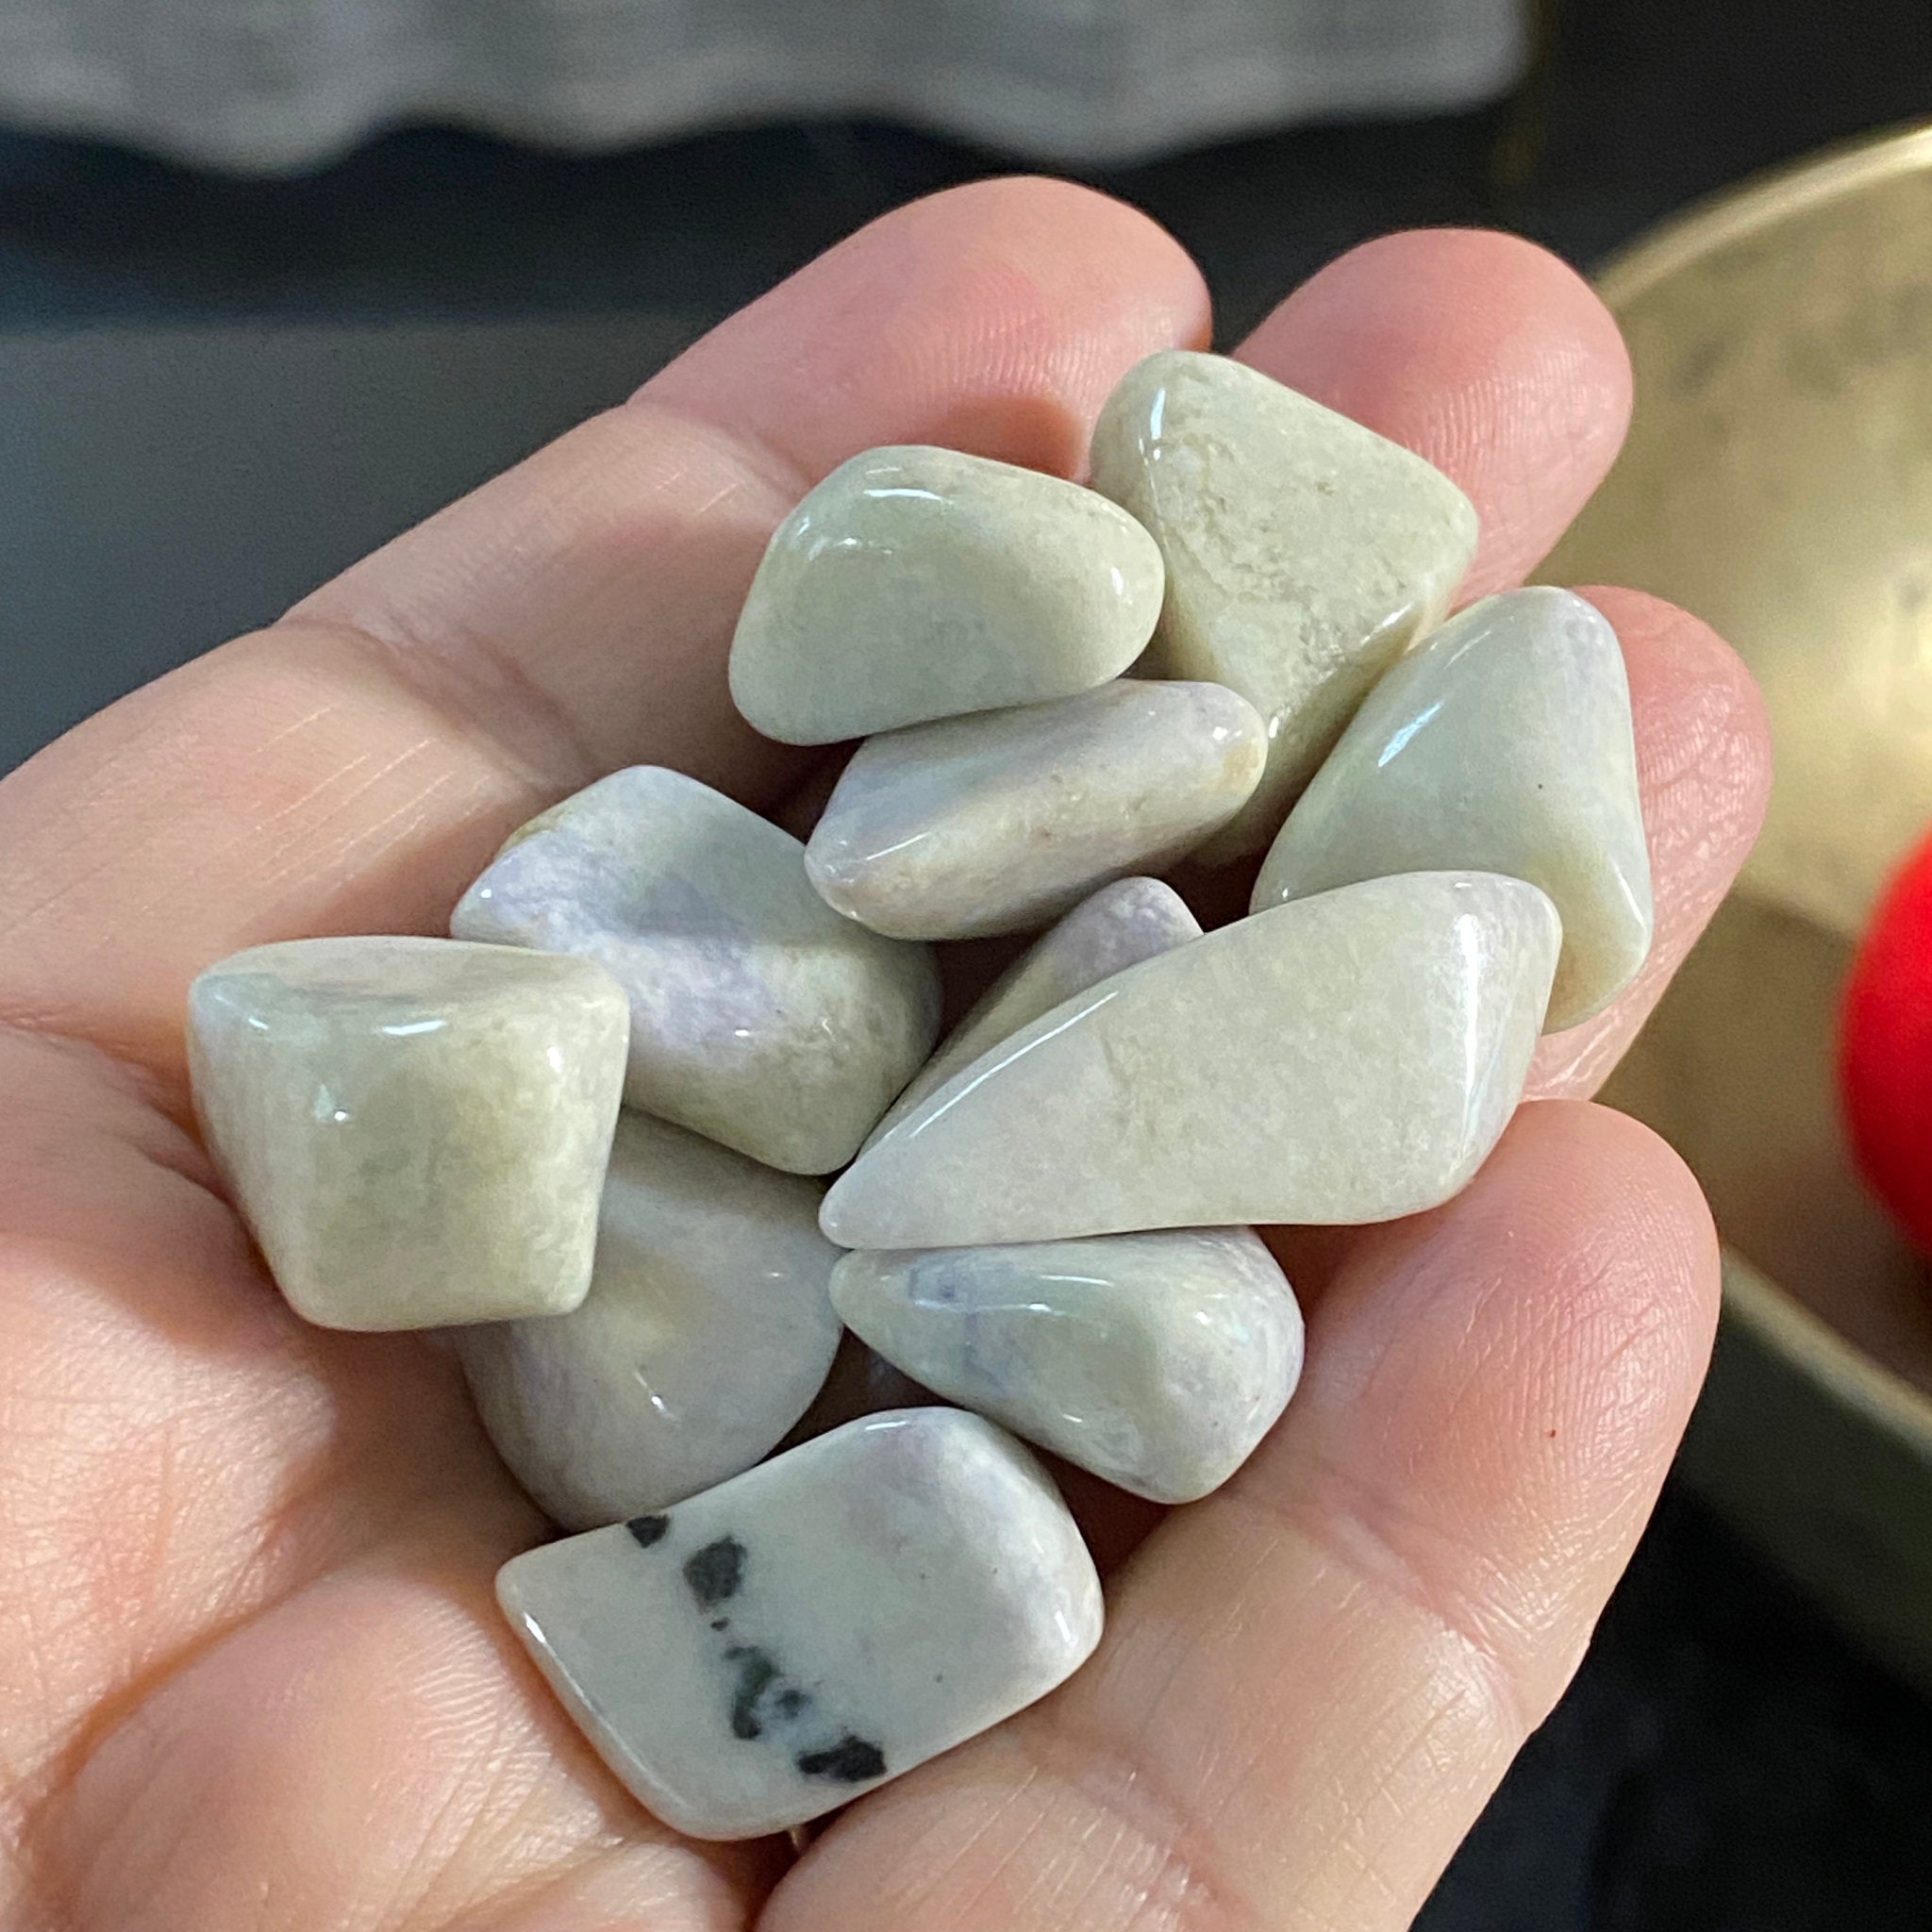 Rare White and Purple Mayan Jade tumbled stones